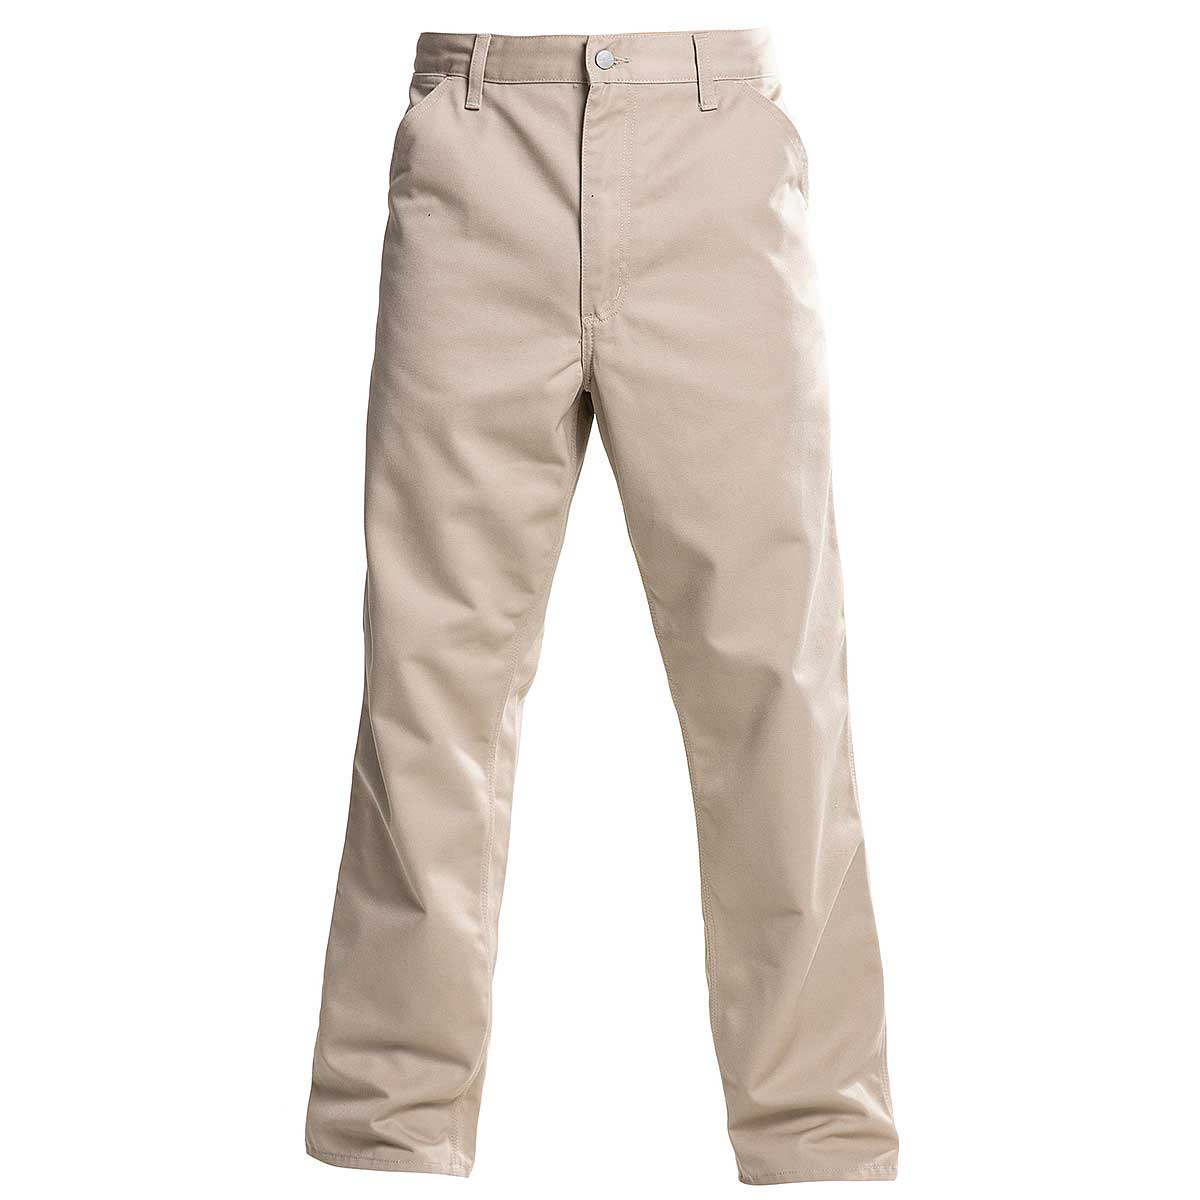 Buy Simple Pants for EUR 76.90 on KICKZ.com!